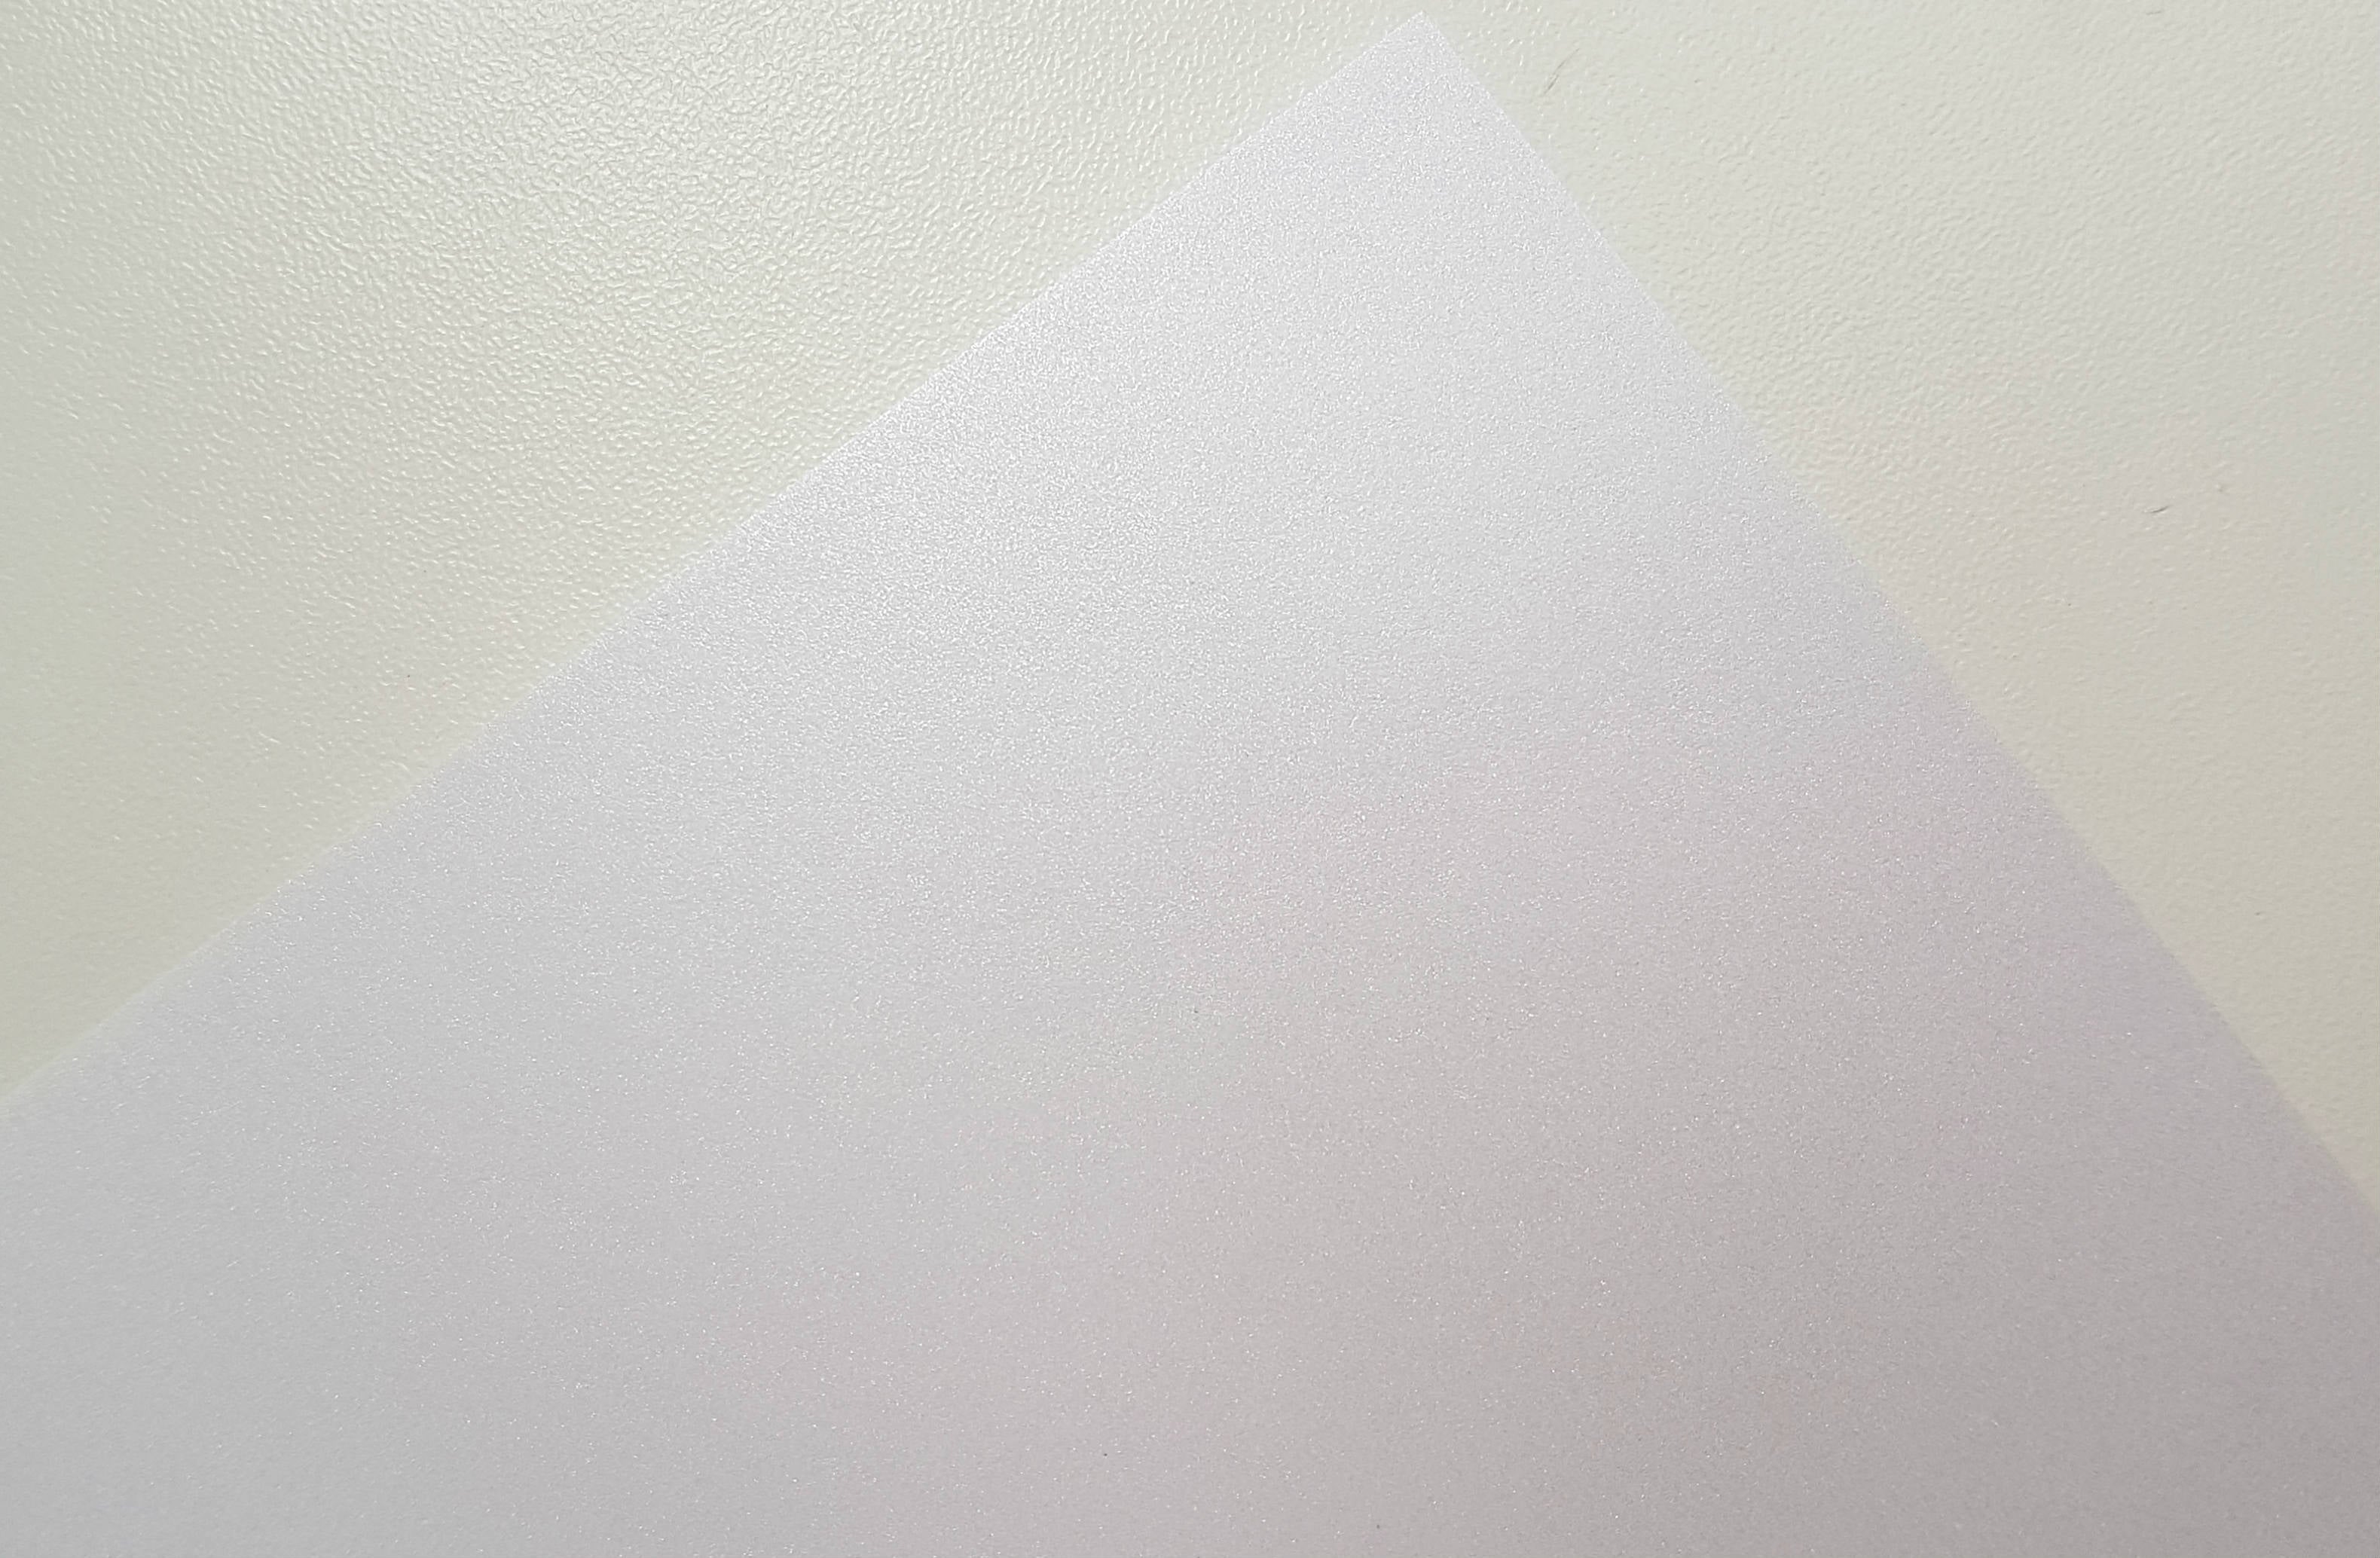 Papel Perolado Branco (Offset) 50 folhas A4 - 120g - Papel Especial